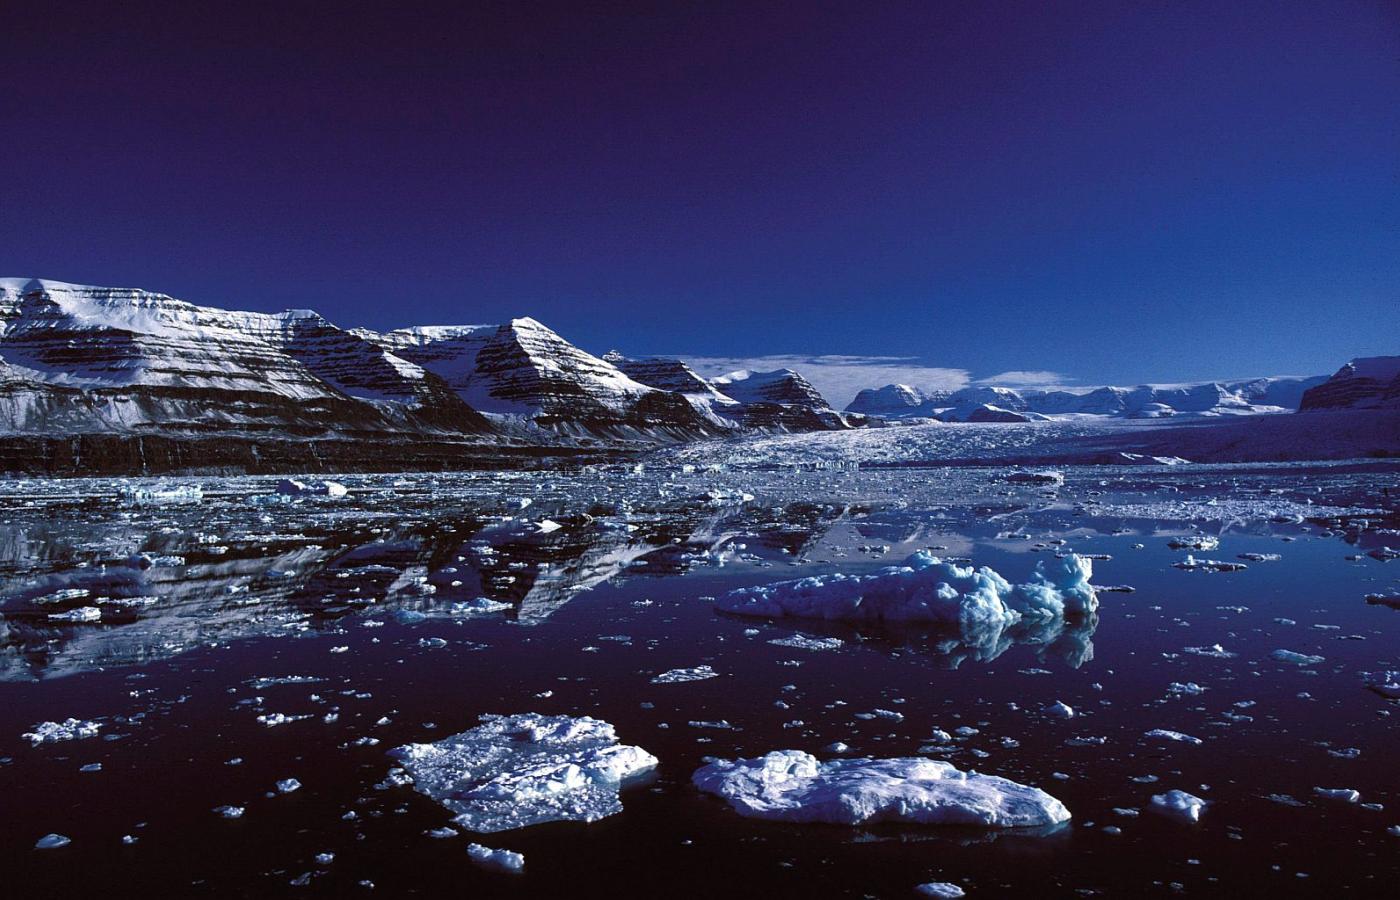 Arktyka jest piękna, ale czy w ogóle przetrwa. Scoresby Sound - system fiordów na wschodnim brzegu Grenlandii.